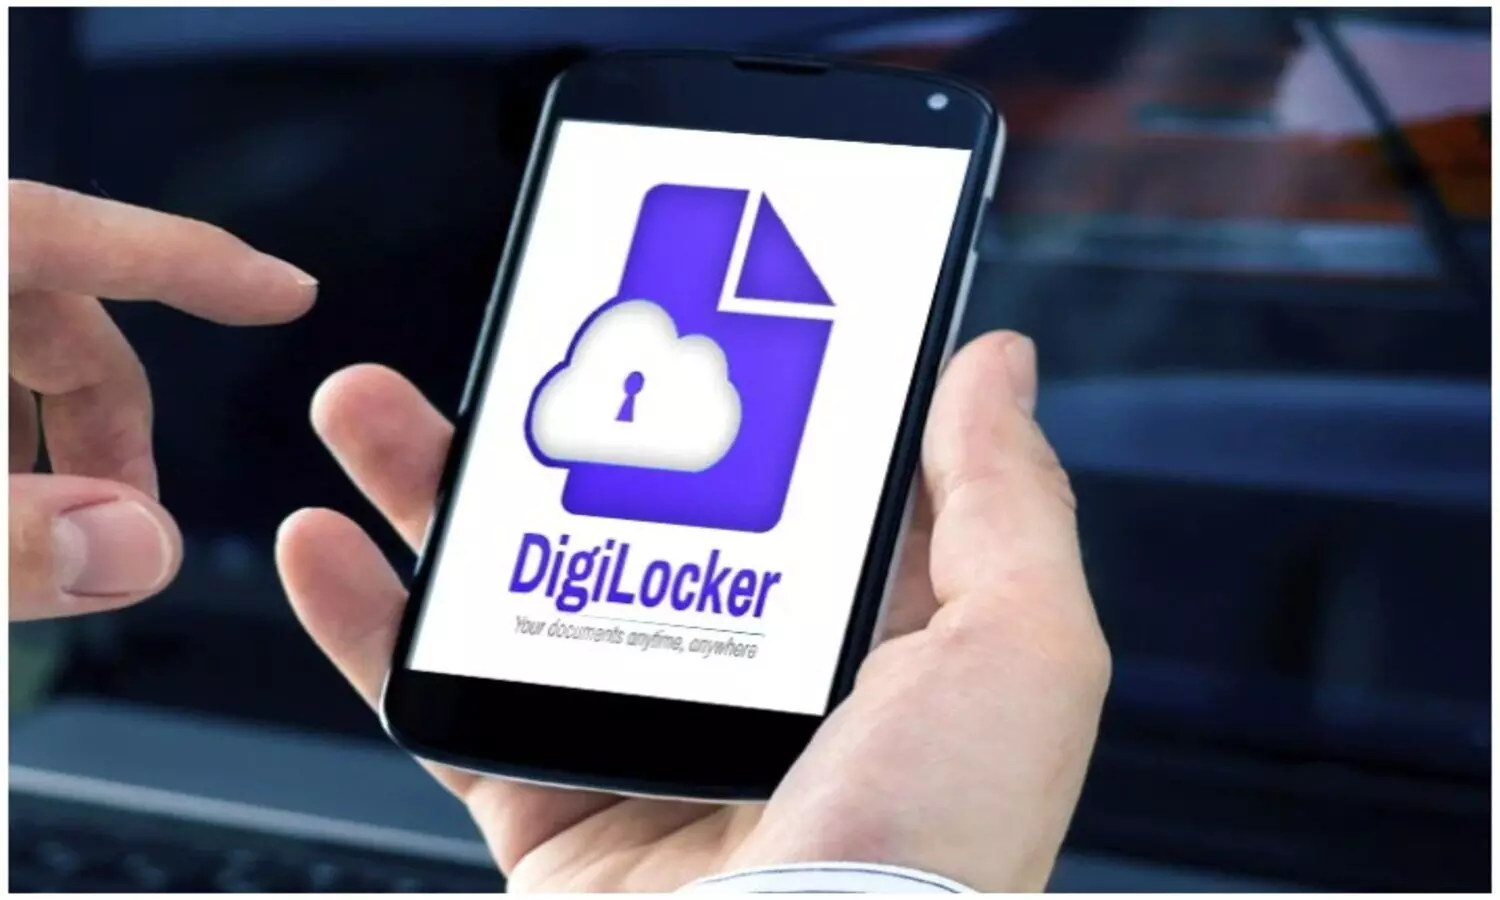 DigiLocker: राशन कार्ड धारकों के लिए अच्छी खबर, योगी सरकार जल्द देगी डिजीलॉकर की सुविधा